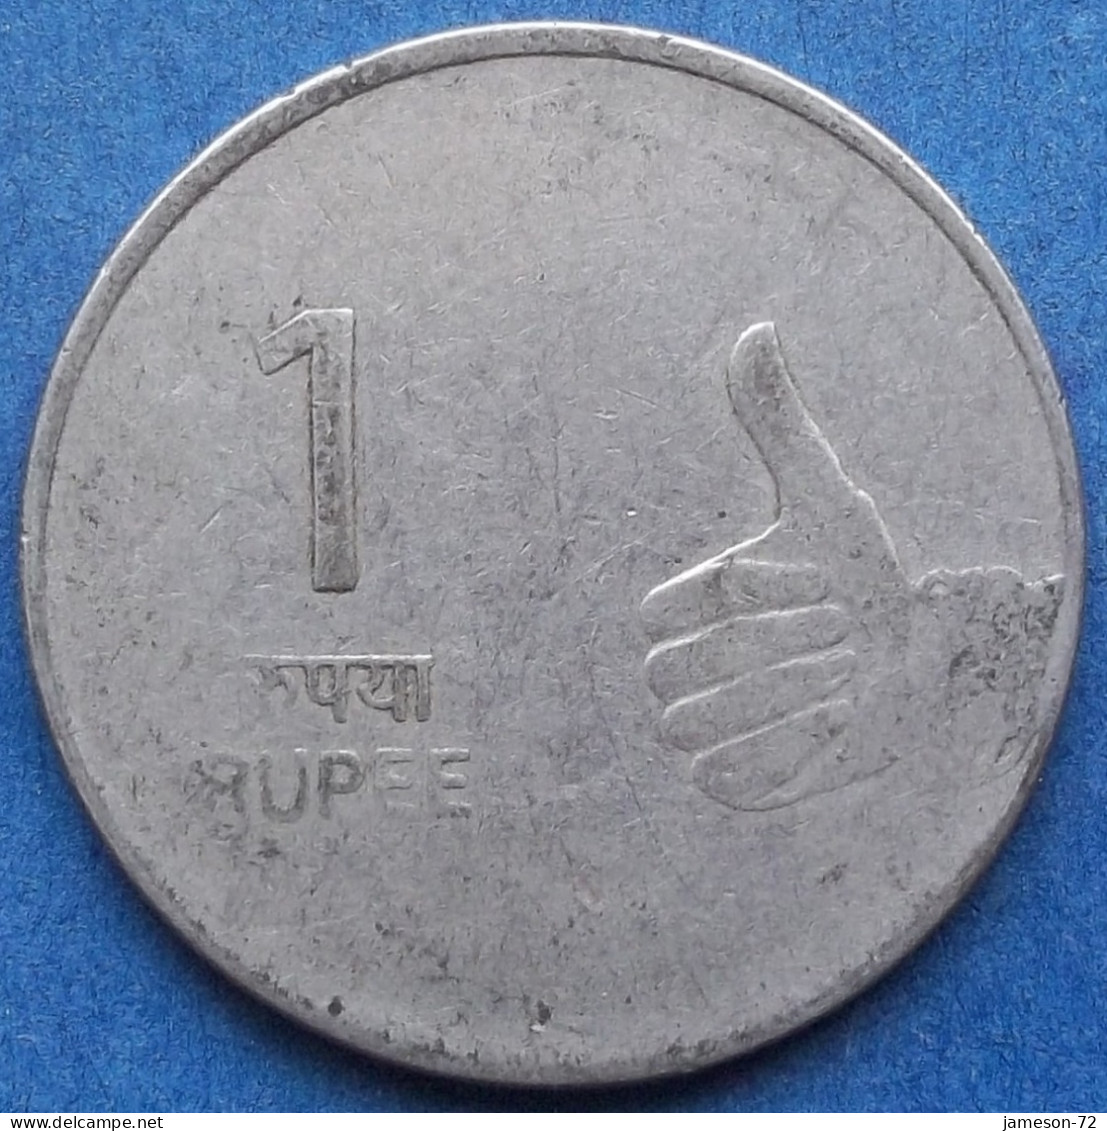 INDIA - 1 Rupee 2010 KM# 331 Republic Decimal Coinage (1957) - Edelweiss Coins - Géorgie